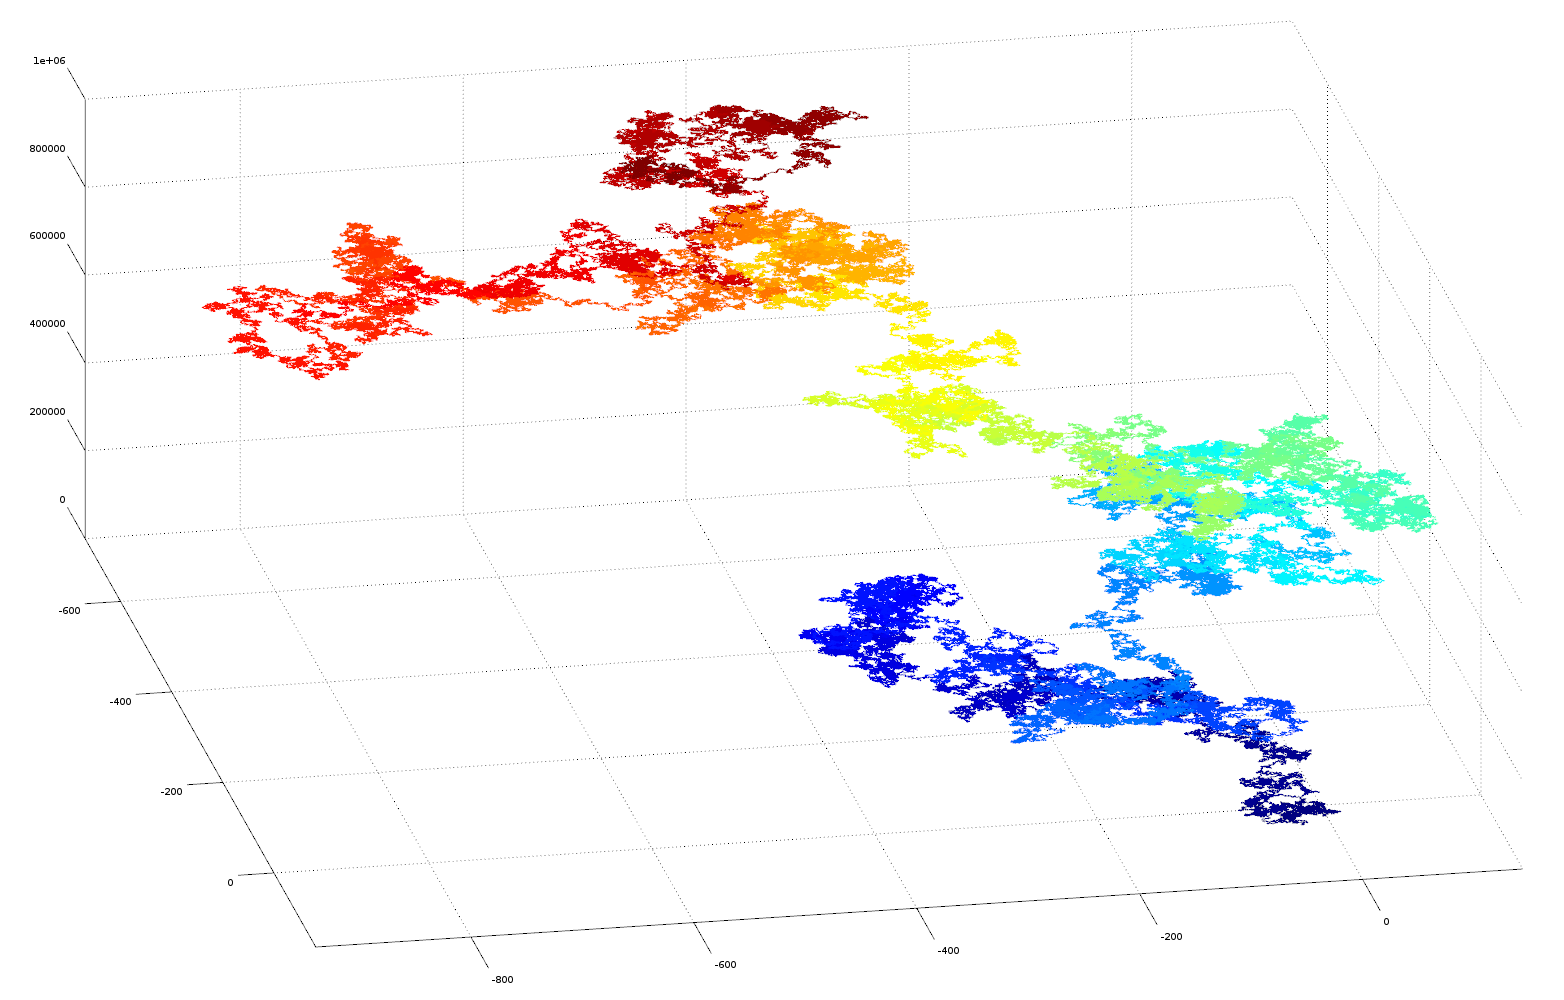 3D plot of e as vector